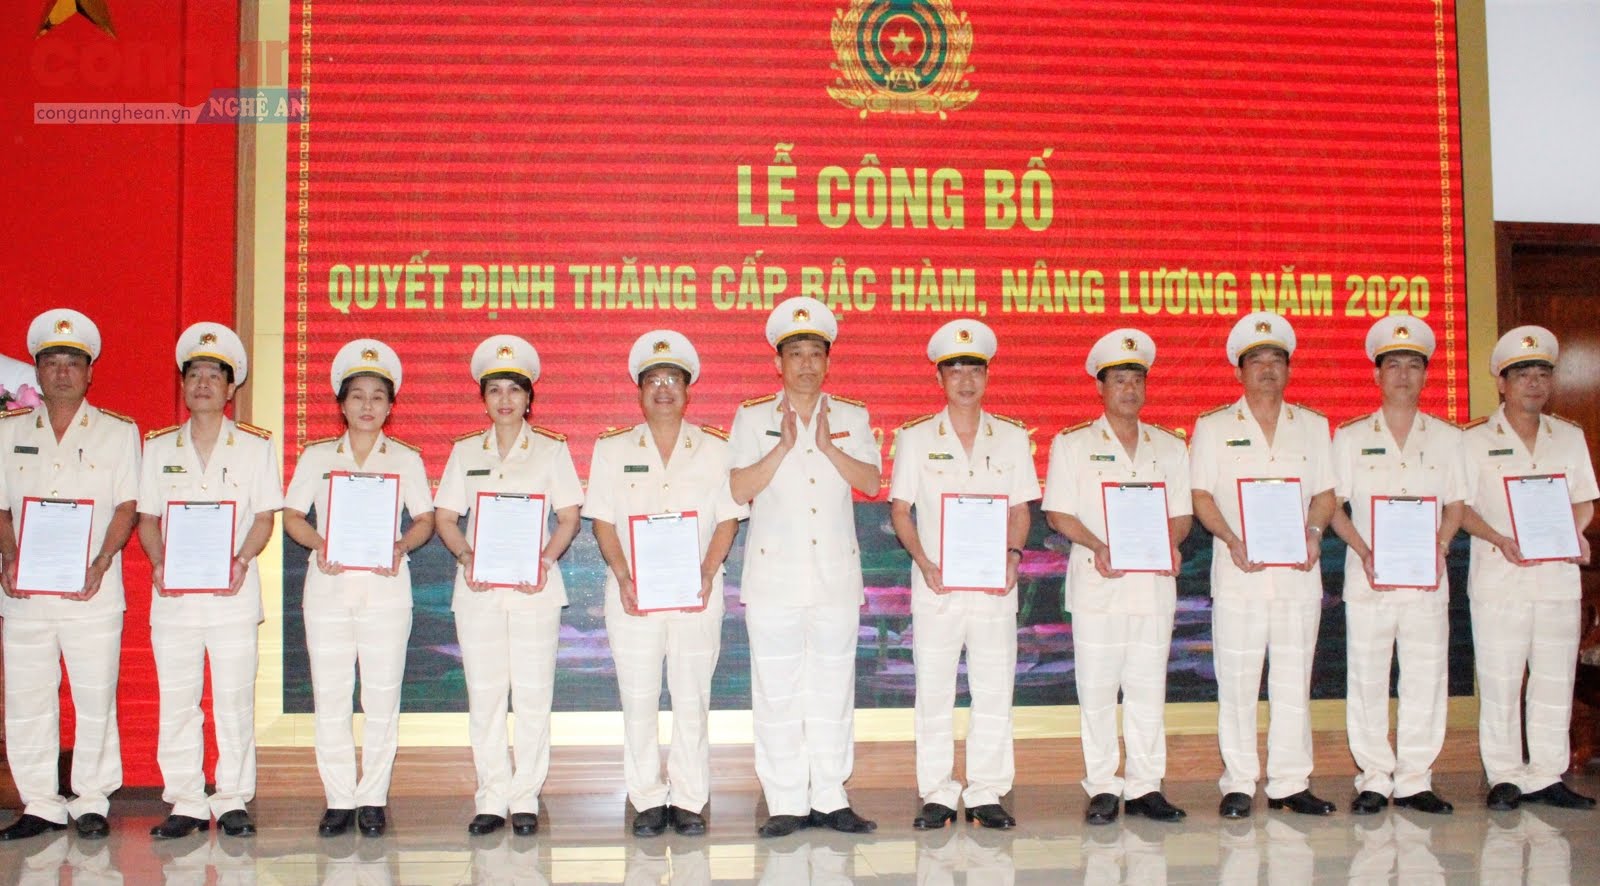 Đại Nguyễn Mạnh Hùng, Phó Giám đốc Công an tỉnh trao quyết định thăng cấp bậc hàm tại buổi lễ